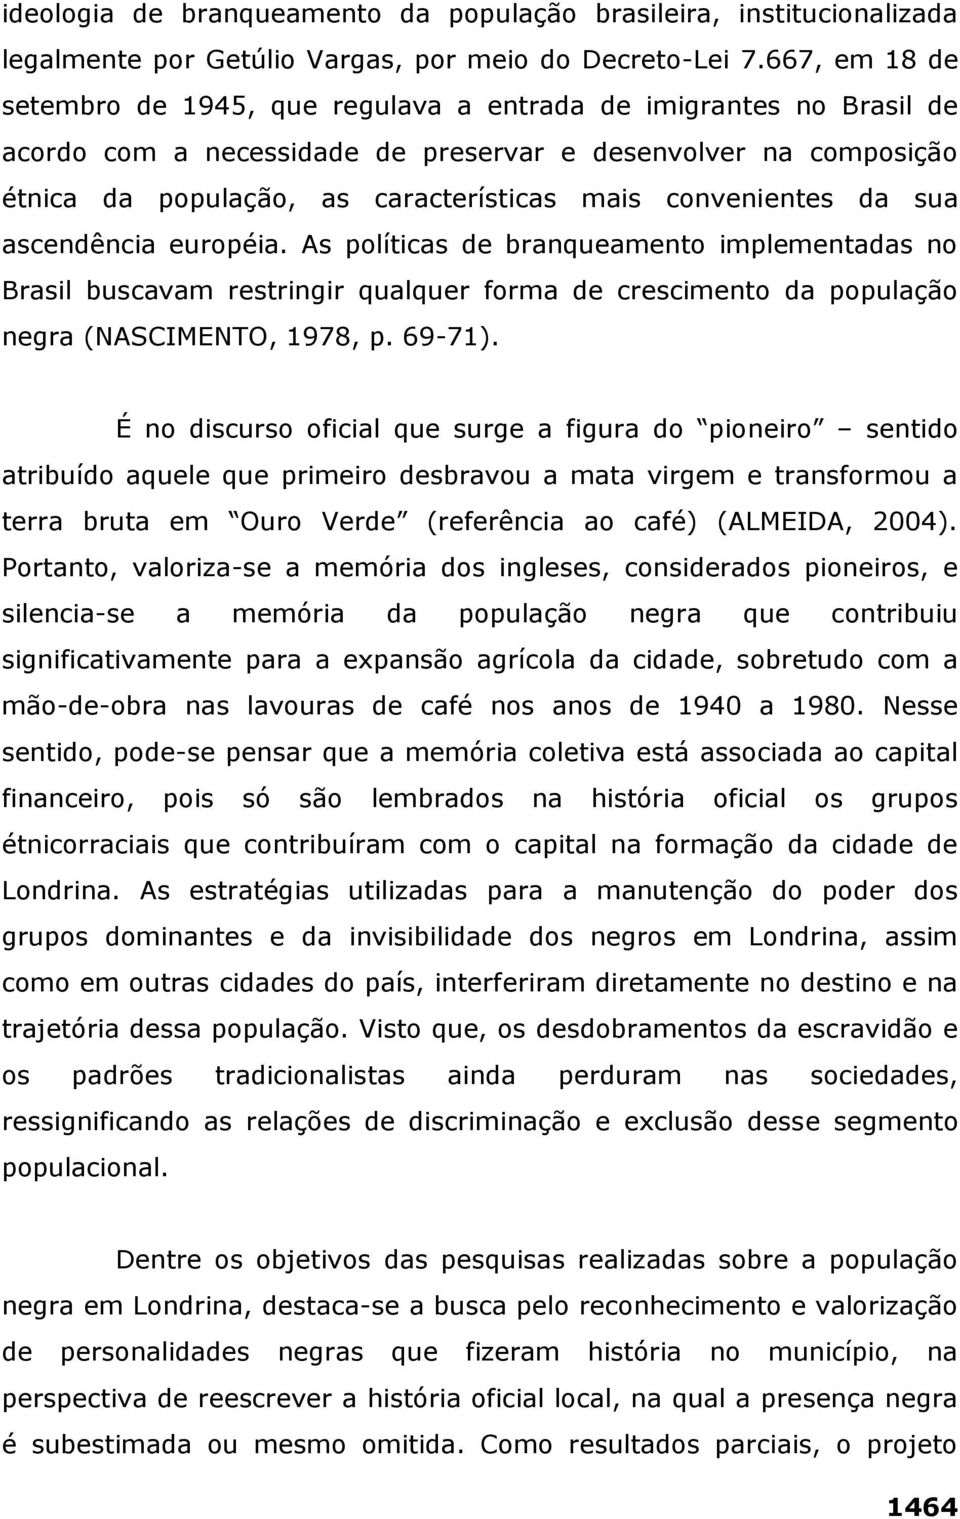 convenientes da sua ascendência européia. As políticas de branqueamento implementadas no Brasil buscavam restringir qualquer forma de crescimento da população negra (NASCIMENTO, 1978, p. 69-71).